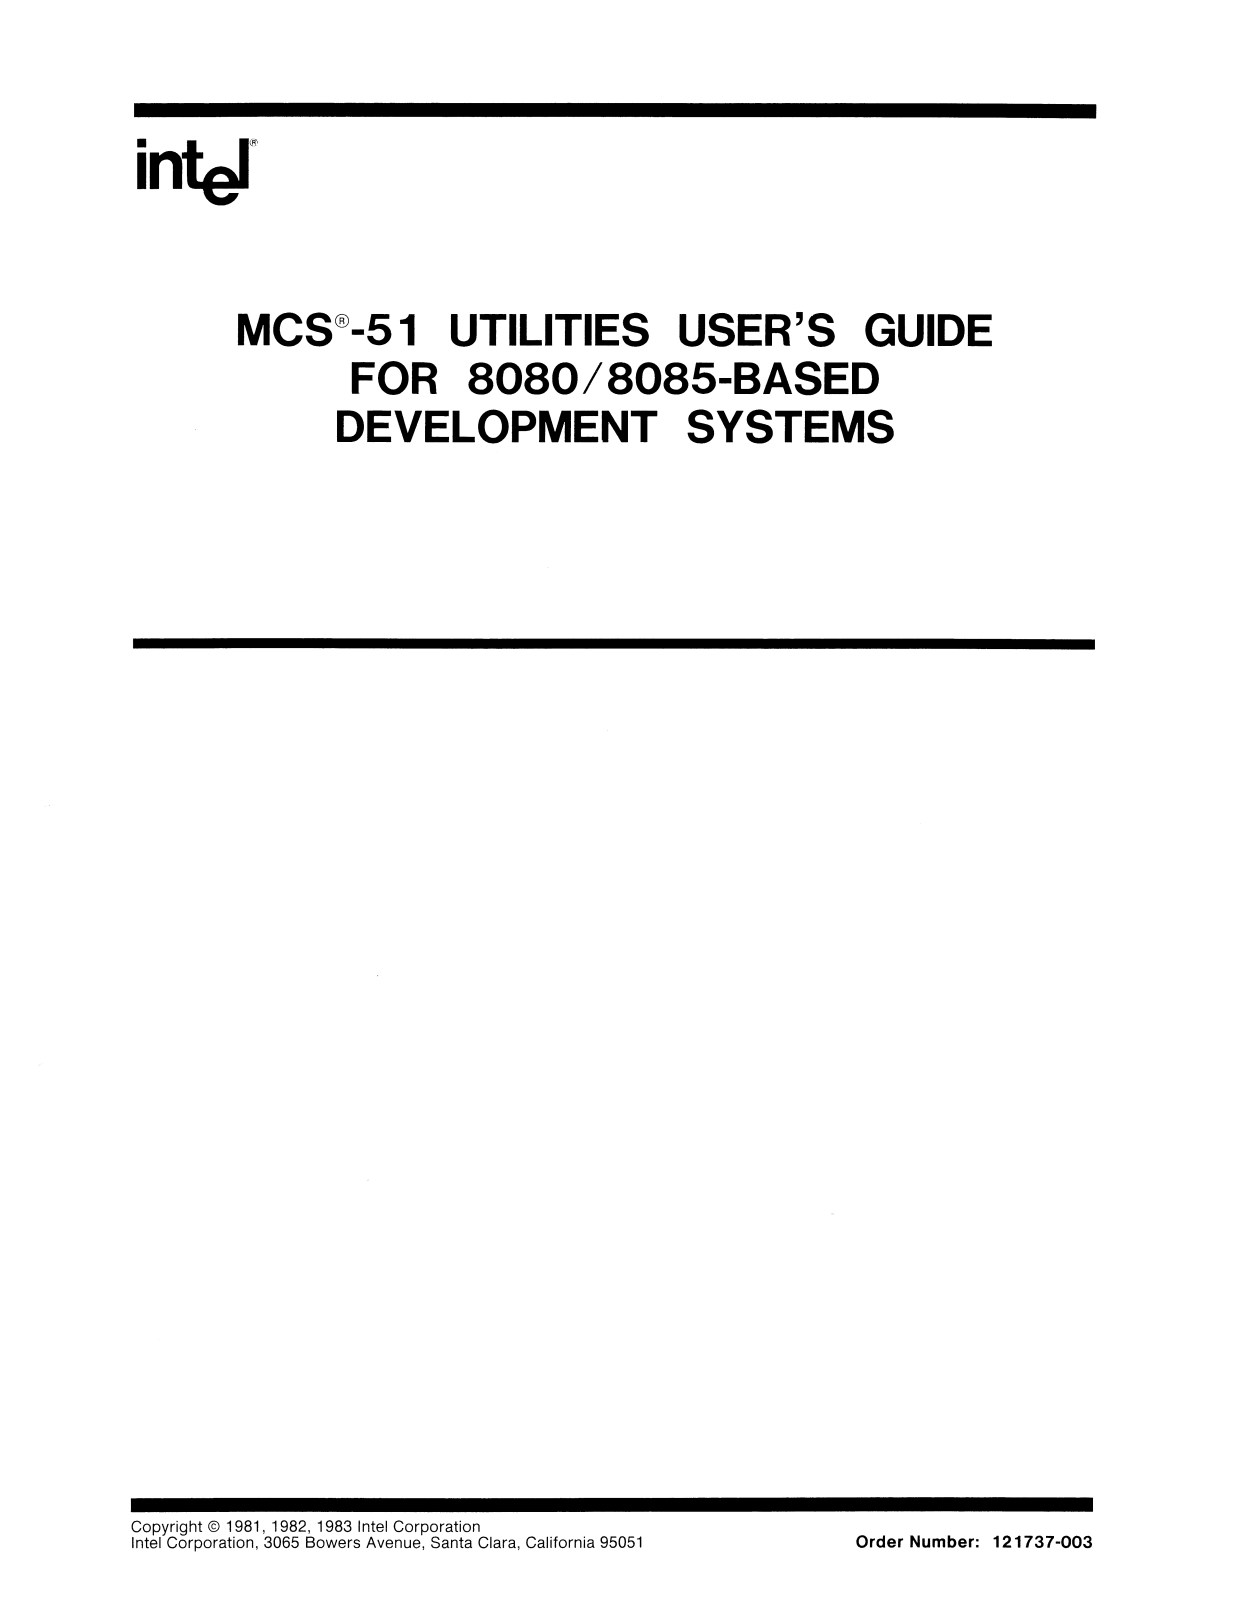 Intel 8080, 8085 User Manual